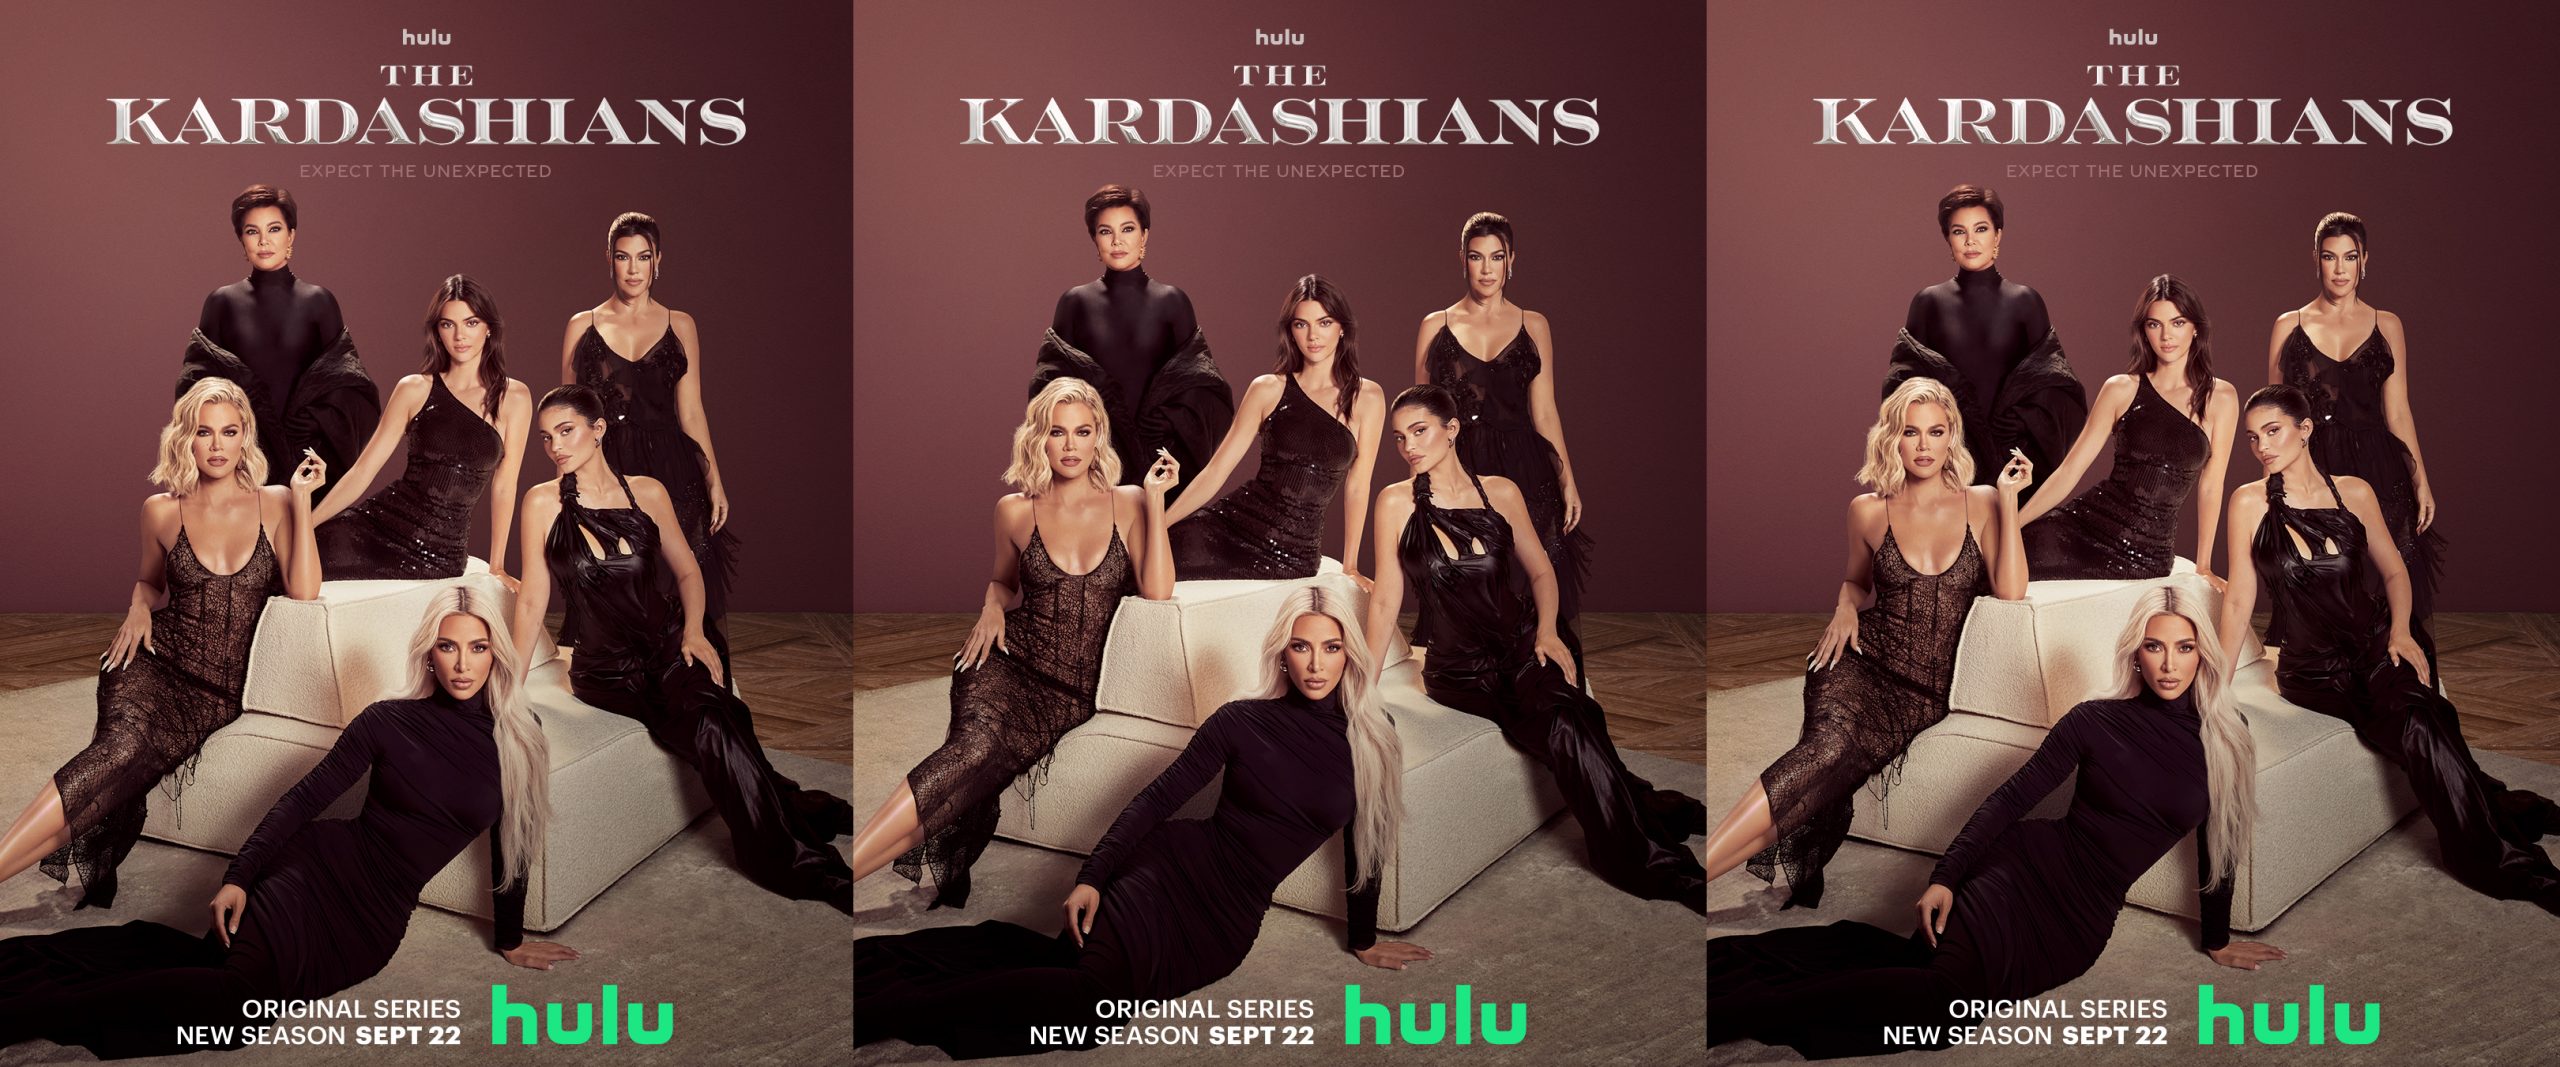 The Kardashians, Hulu, Fulwell 73, Kardashian Jenner Productions